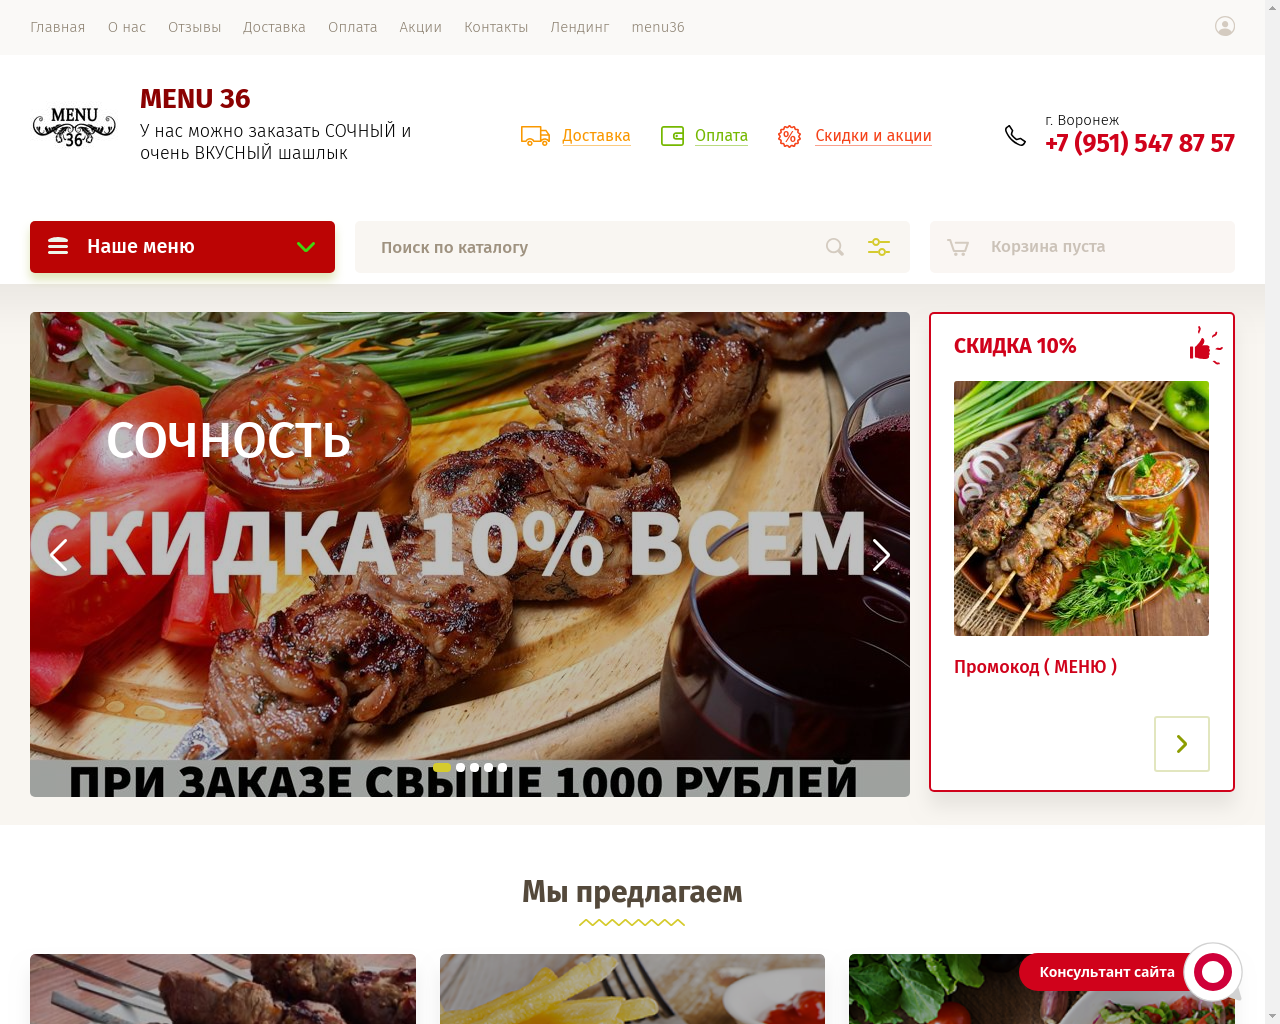 Изображение сайта menu36.ru в разрешении 1280x1024